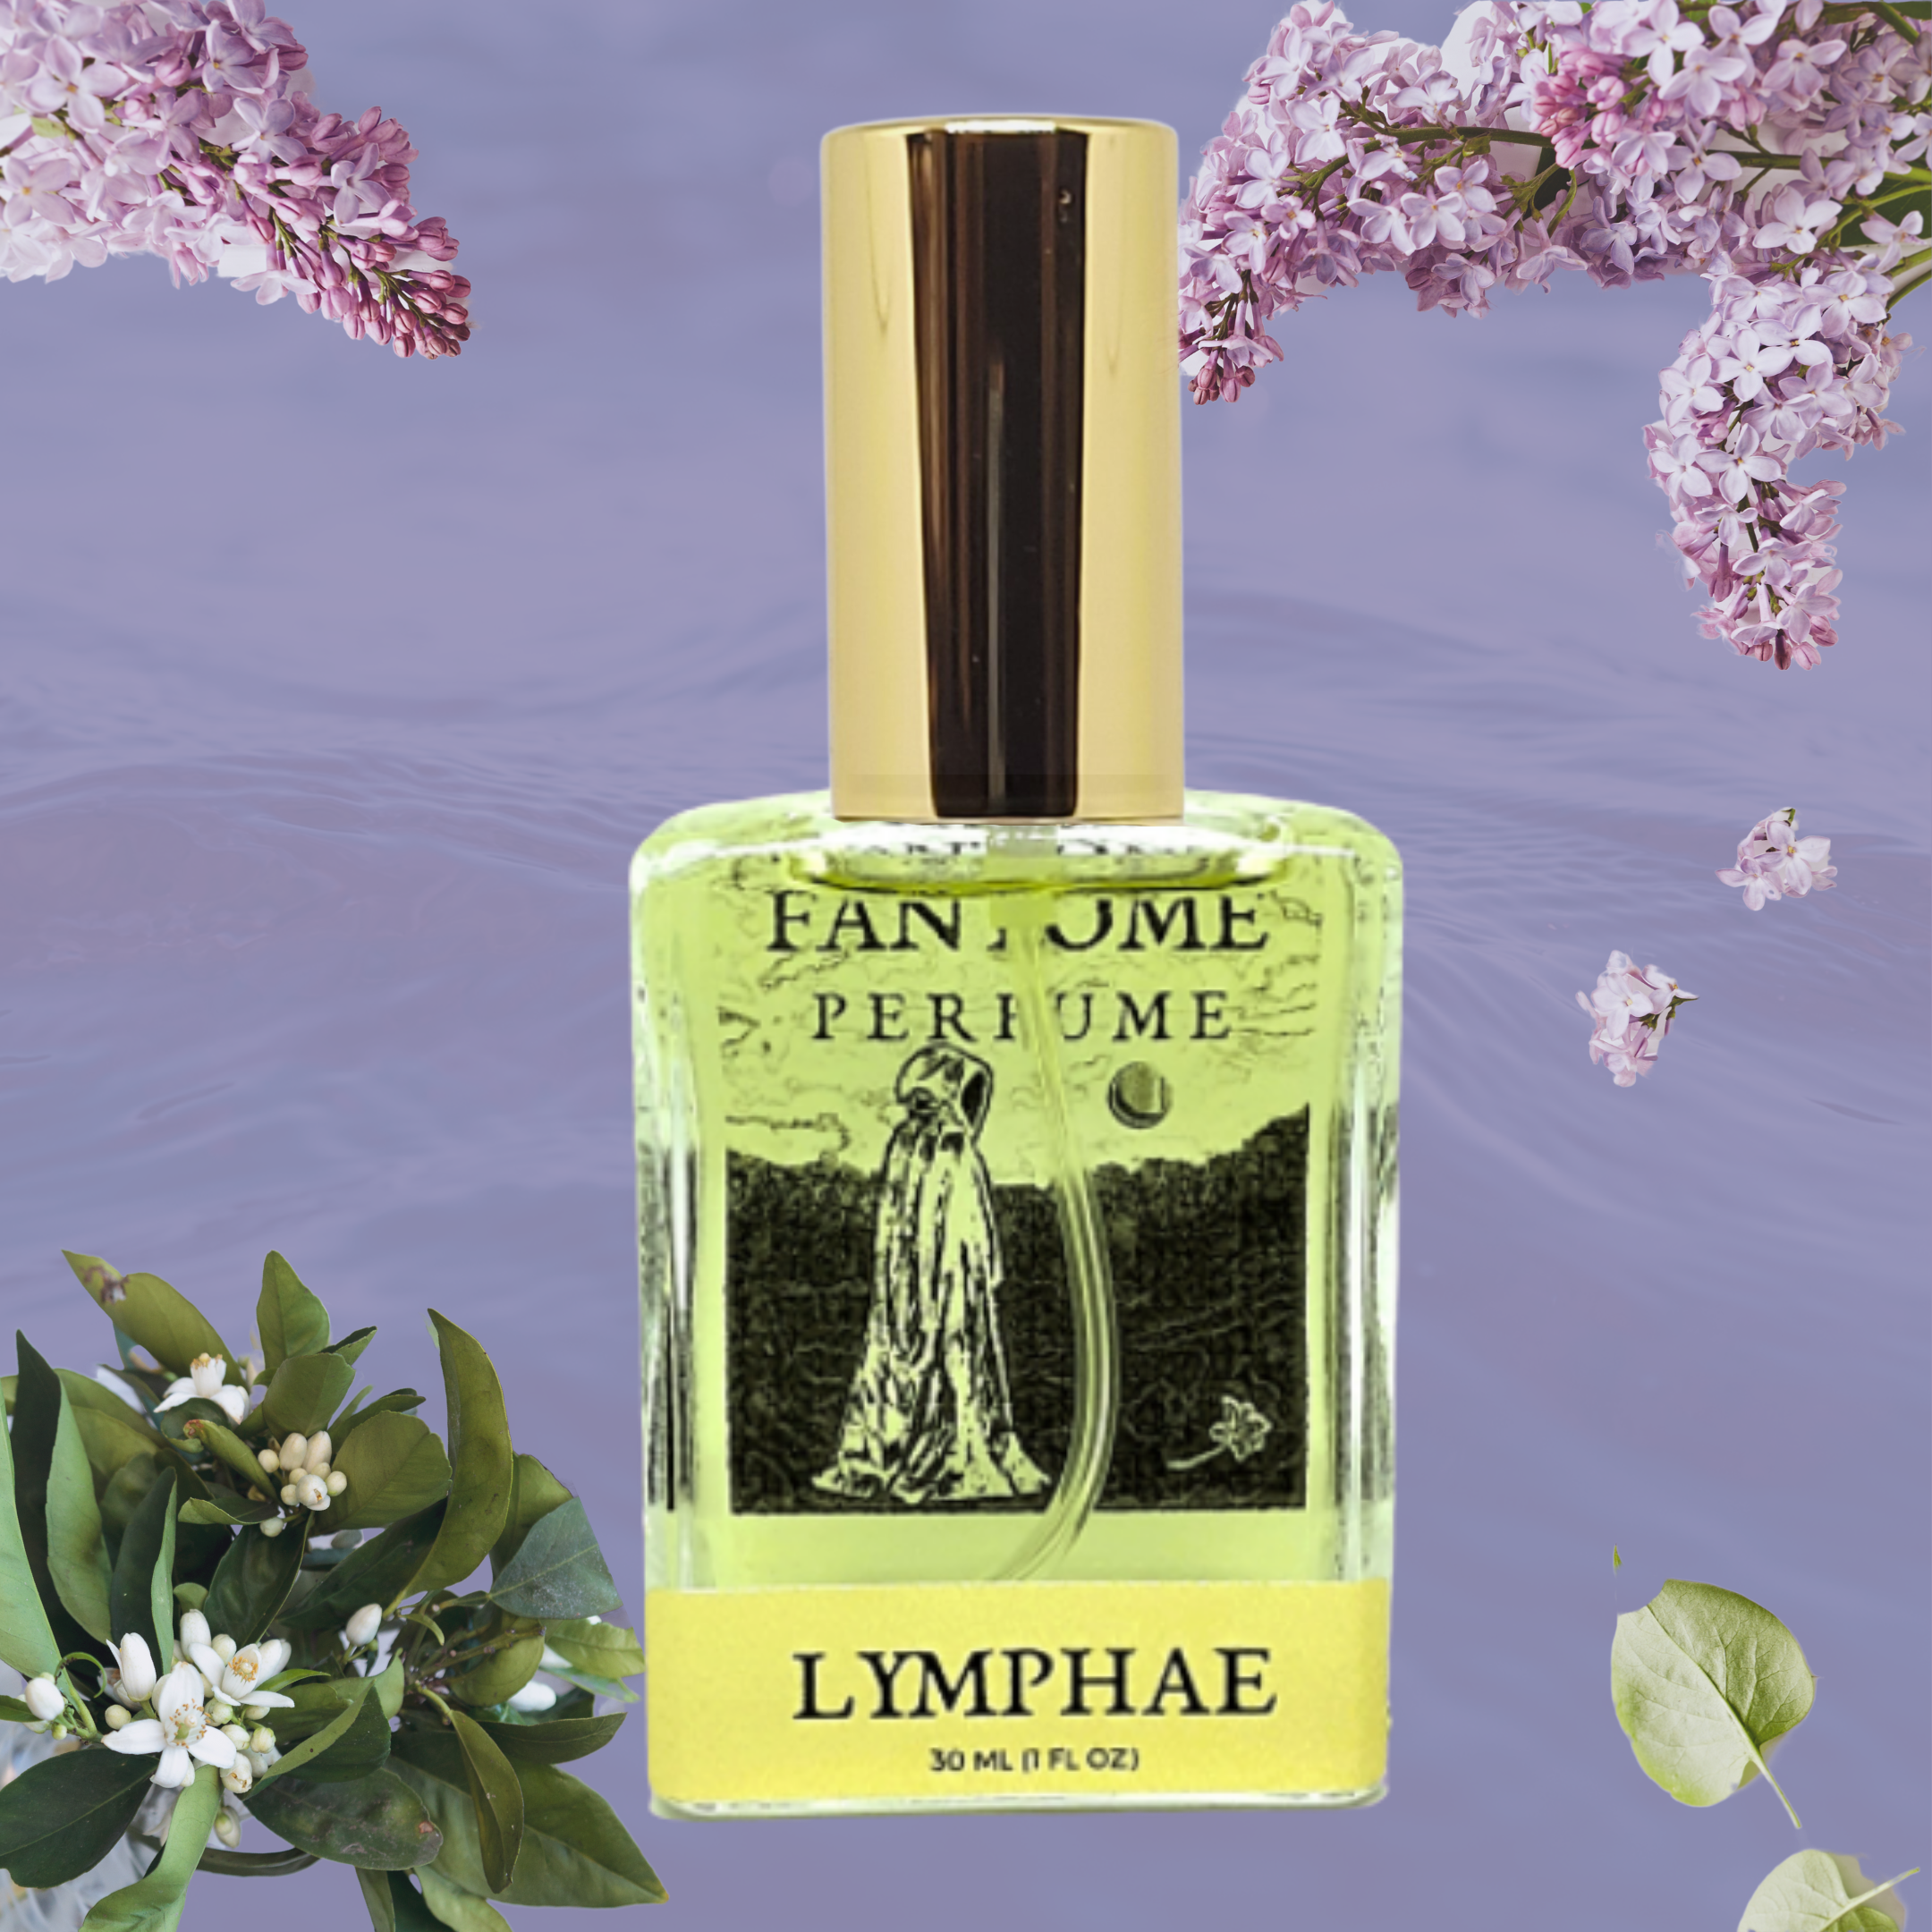 Lymphae Extrait de Parfum